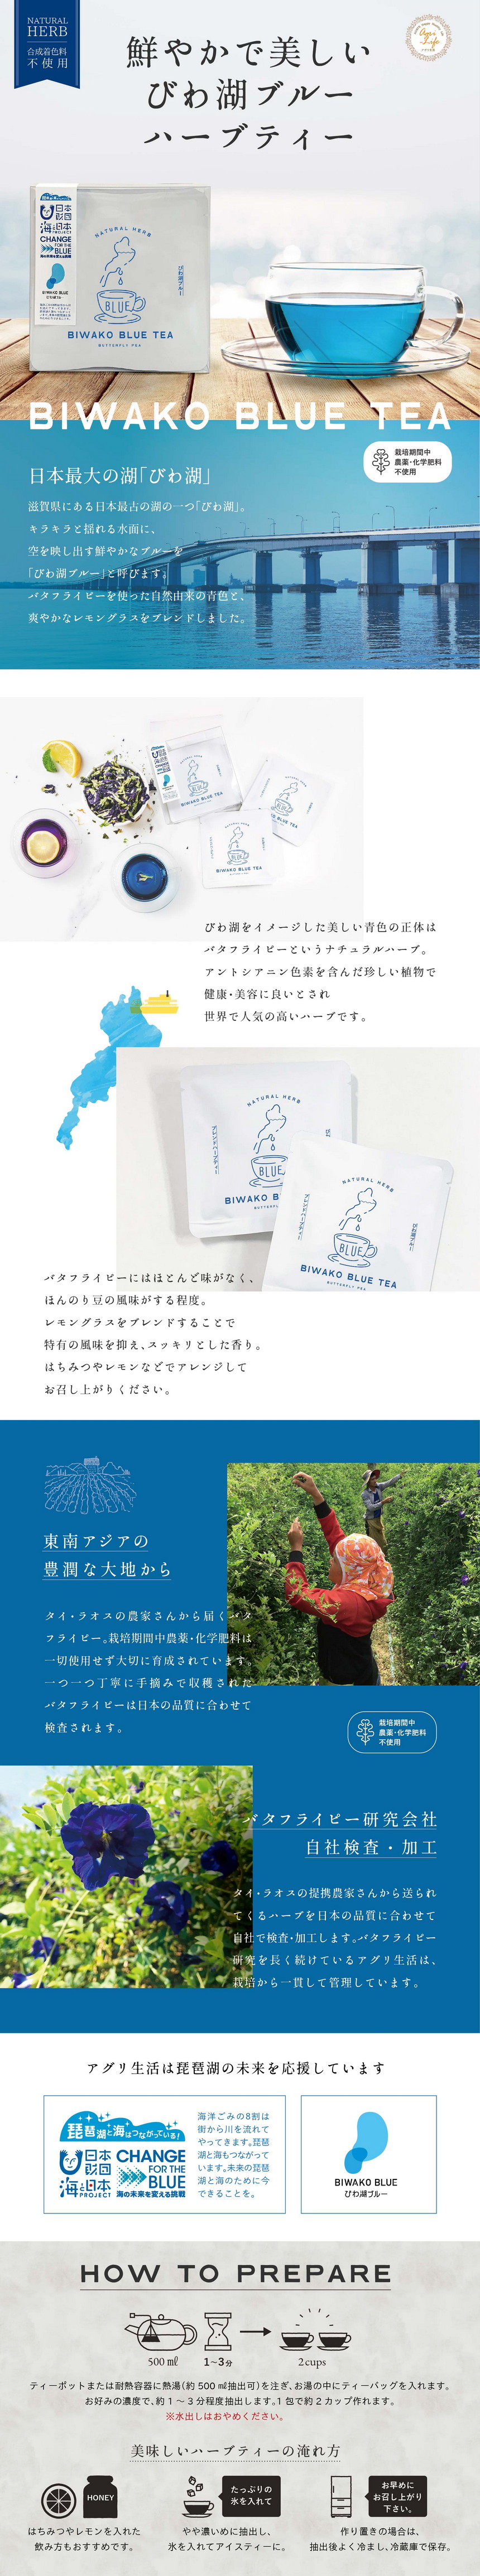 鮮やかで美しいびわ湖ブルーハーブティー/日本最大の湖「びわ湖」滋賀県にある日本最古の湖の一つ「びわ湖」/キラキラと揺れる水面に空を映し出す鮮やかなブブルーをびわ湖ブルーと呼びます/バタフライピーを使った自然由来の青色と爽やかなレモングラスをブレンドしました/栽培期間中農薬・化学肥料不使用/びわ湖をイメージした美しい青色の正体はバタフライピーというナチュラルハーブ/アントシアニン色素を含んだ珍しい植物で健康・美容に良いとされ世界で人気の高いハーブです/バタフライピーにはほとんど味がなくほんのり豆の風味がする程度/レモングラスをブレンドすることで特有の風味を抑えスッキリとした香り/はちみつやレモンなどでアレンジしてお召し上がりください/東南アジアの豊潤な大地から/タイ・ラオスの農家さんから届くバタフライピー/栽培期間中農薬・化学肥料は一切使用せず大切に育成されています/一つ一つ丁寧に手摘みで収穫されたバタフライピーは日本の品質に合わせて検査されます/バタフライピー研究会社/自社検査・加工/タイ・ラオスの提携農家さんかた送られてくるハーブを日本の品質に合わせて自社で検査・加工します/バタフライピー研究を長く続けているアグリ生活は栽培から一貫して管理しています/アグリ生活は琵琶湖の未来を応援しています/日本財団海と日本プロジェクト/海の未来を変える挑戦/びわ湖ブルー